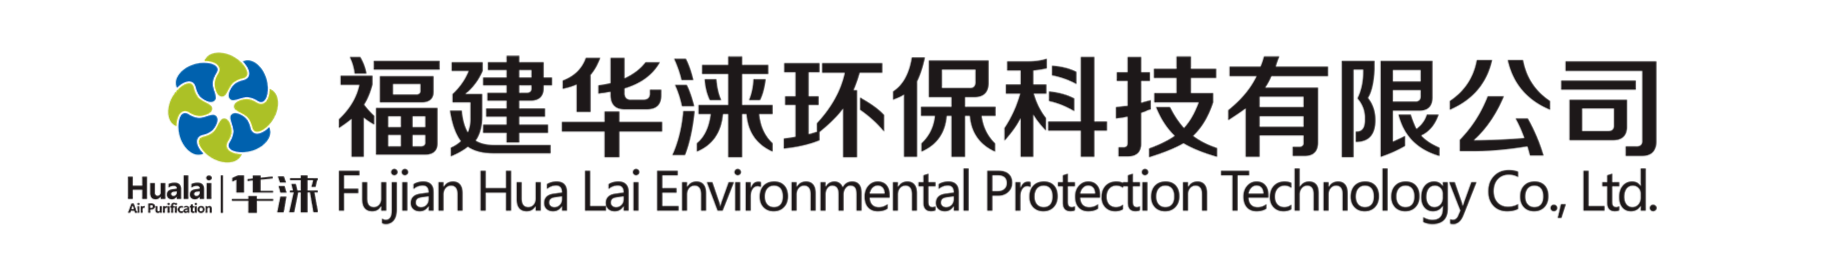 旋风除尘器-福建华涞环保科技有限公司